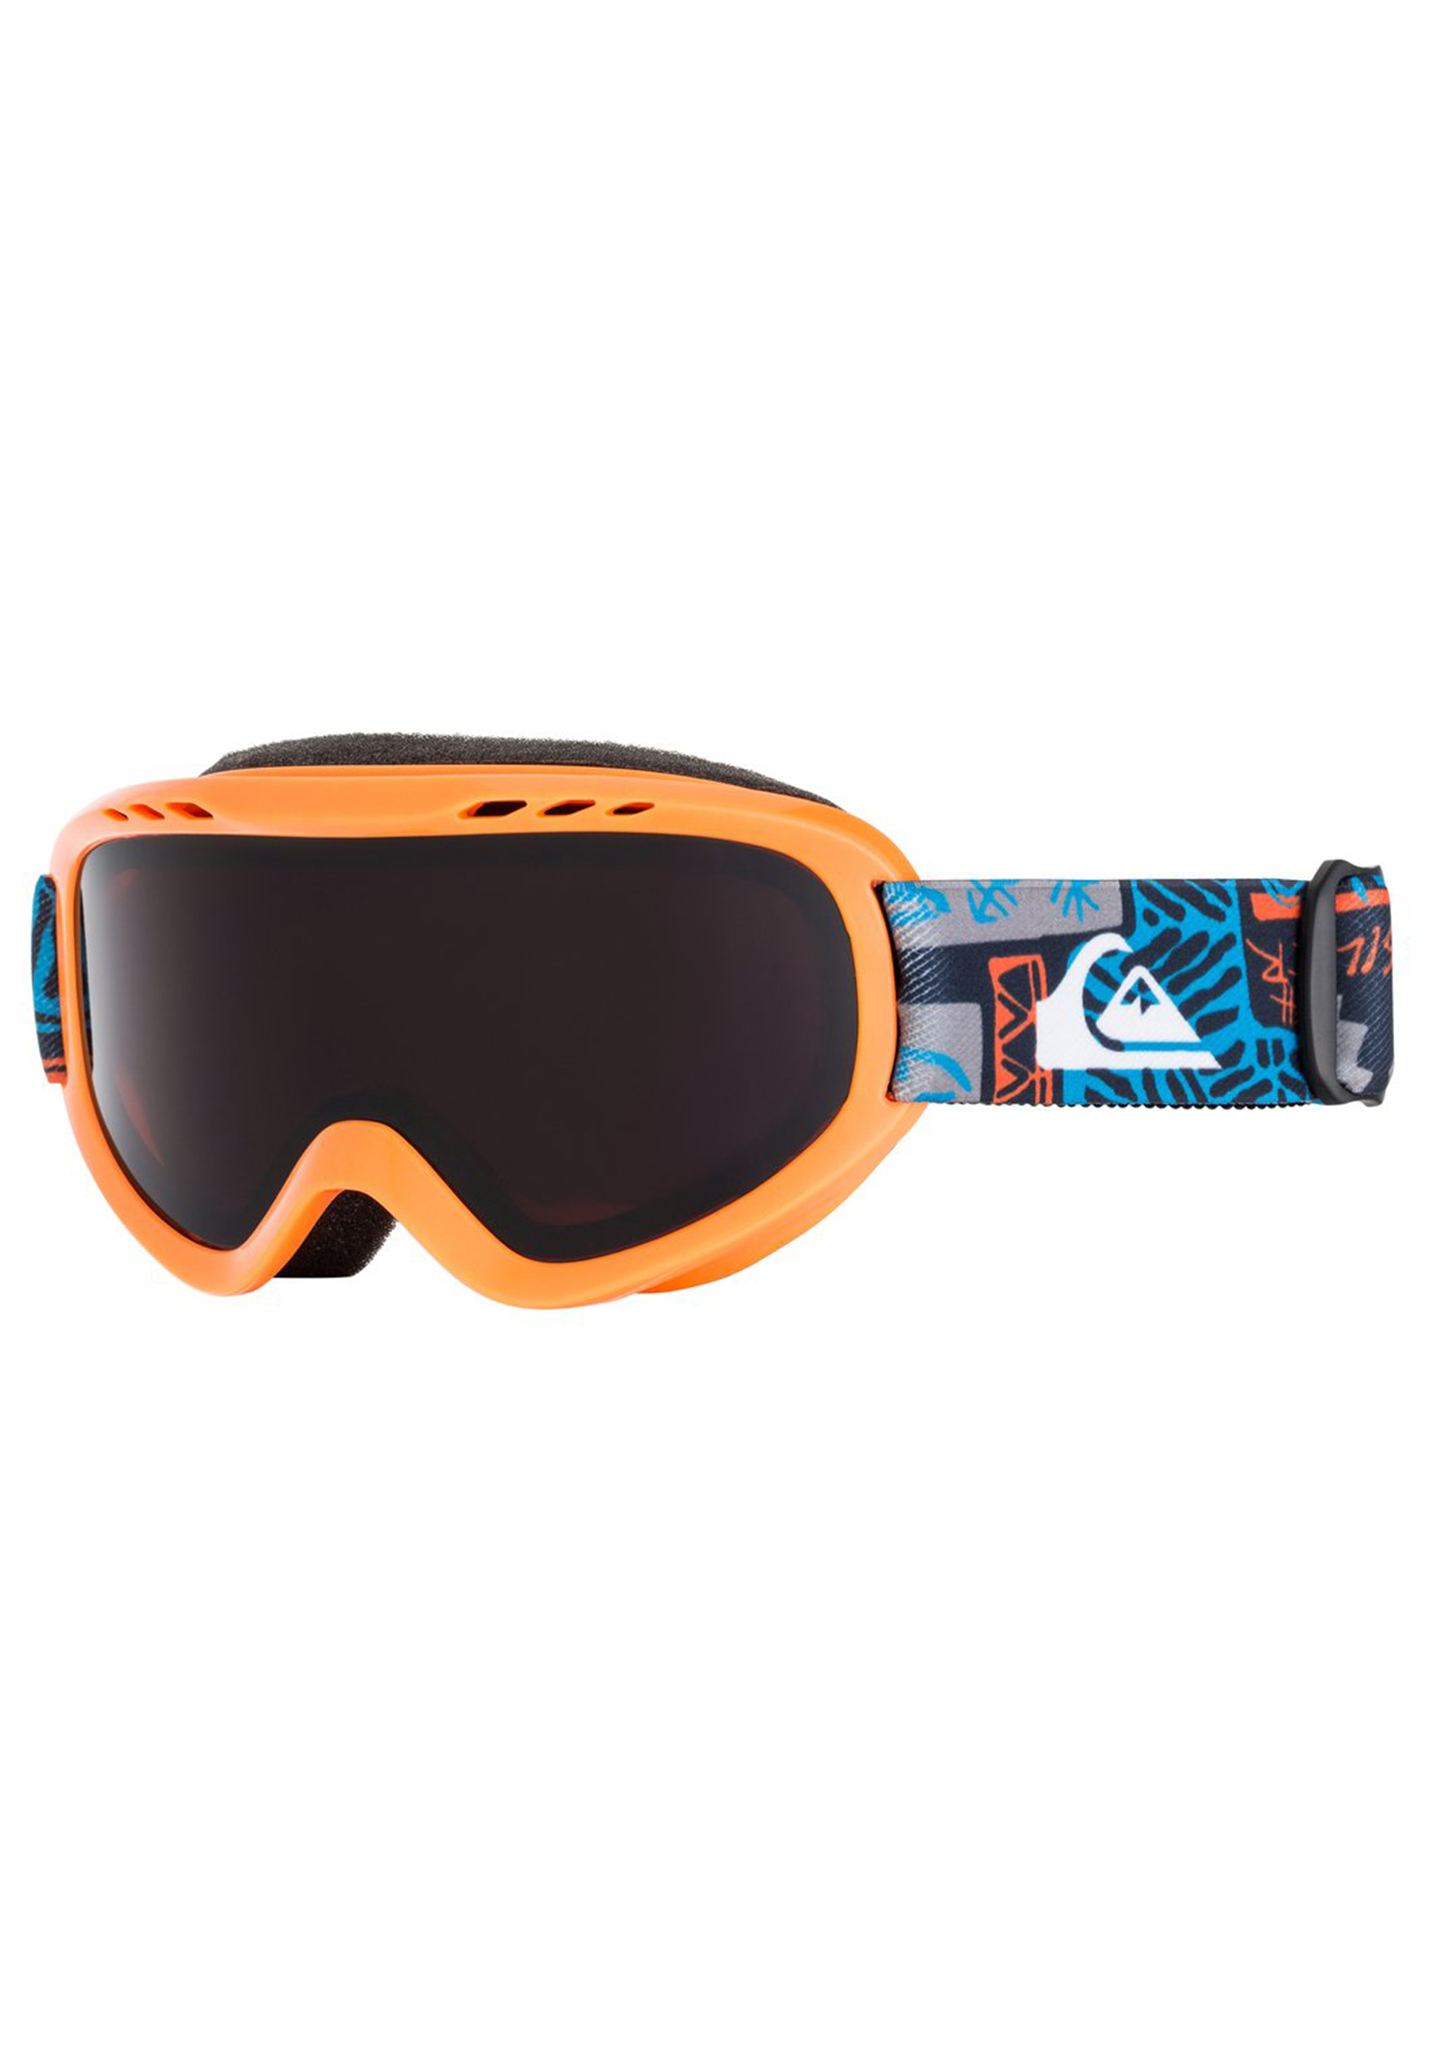 Quiksilver Flake Snowboardbrillen orange One Size